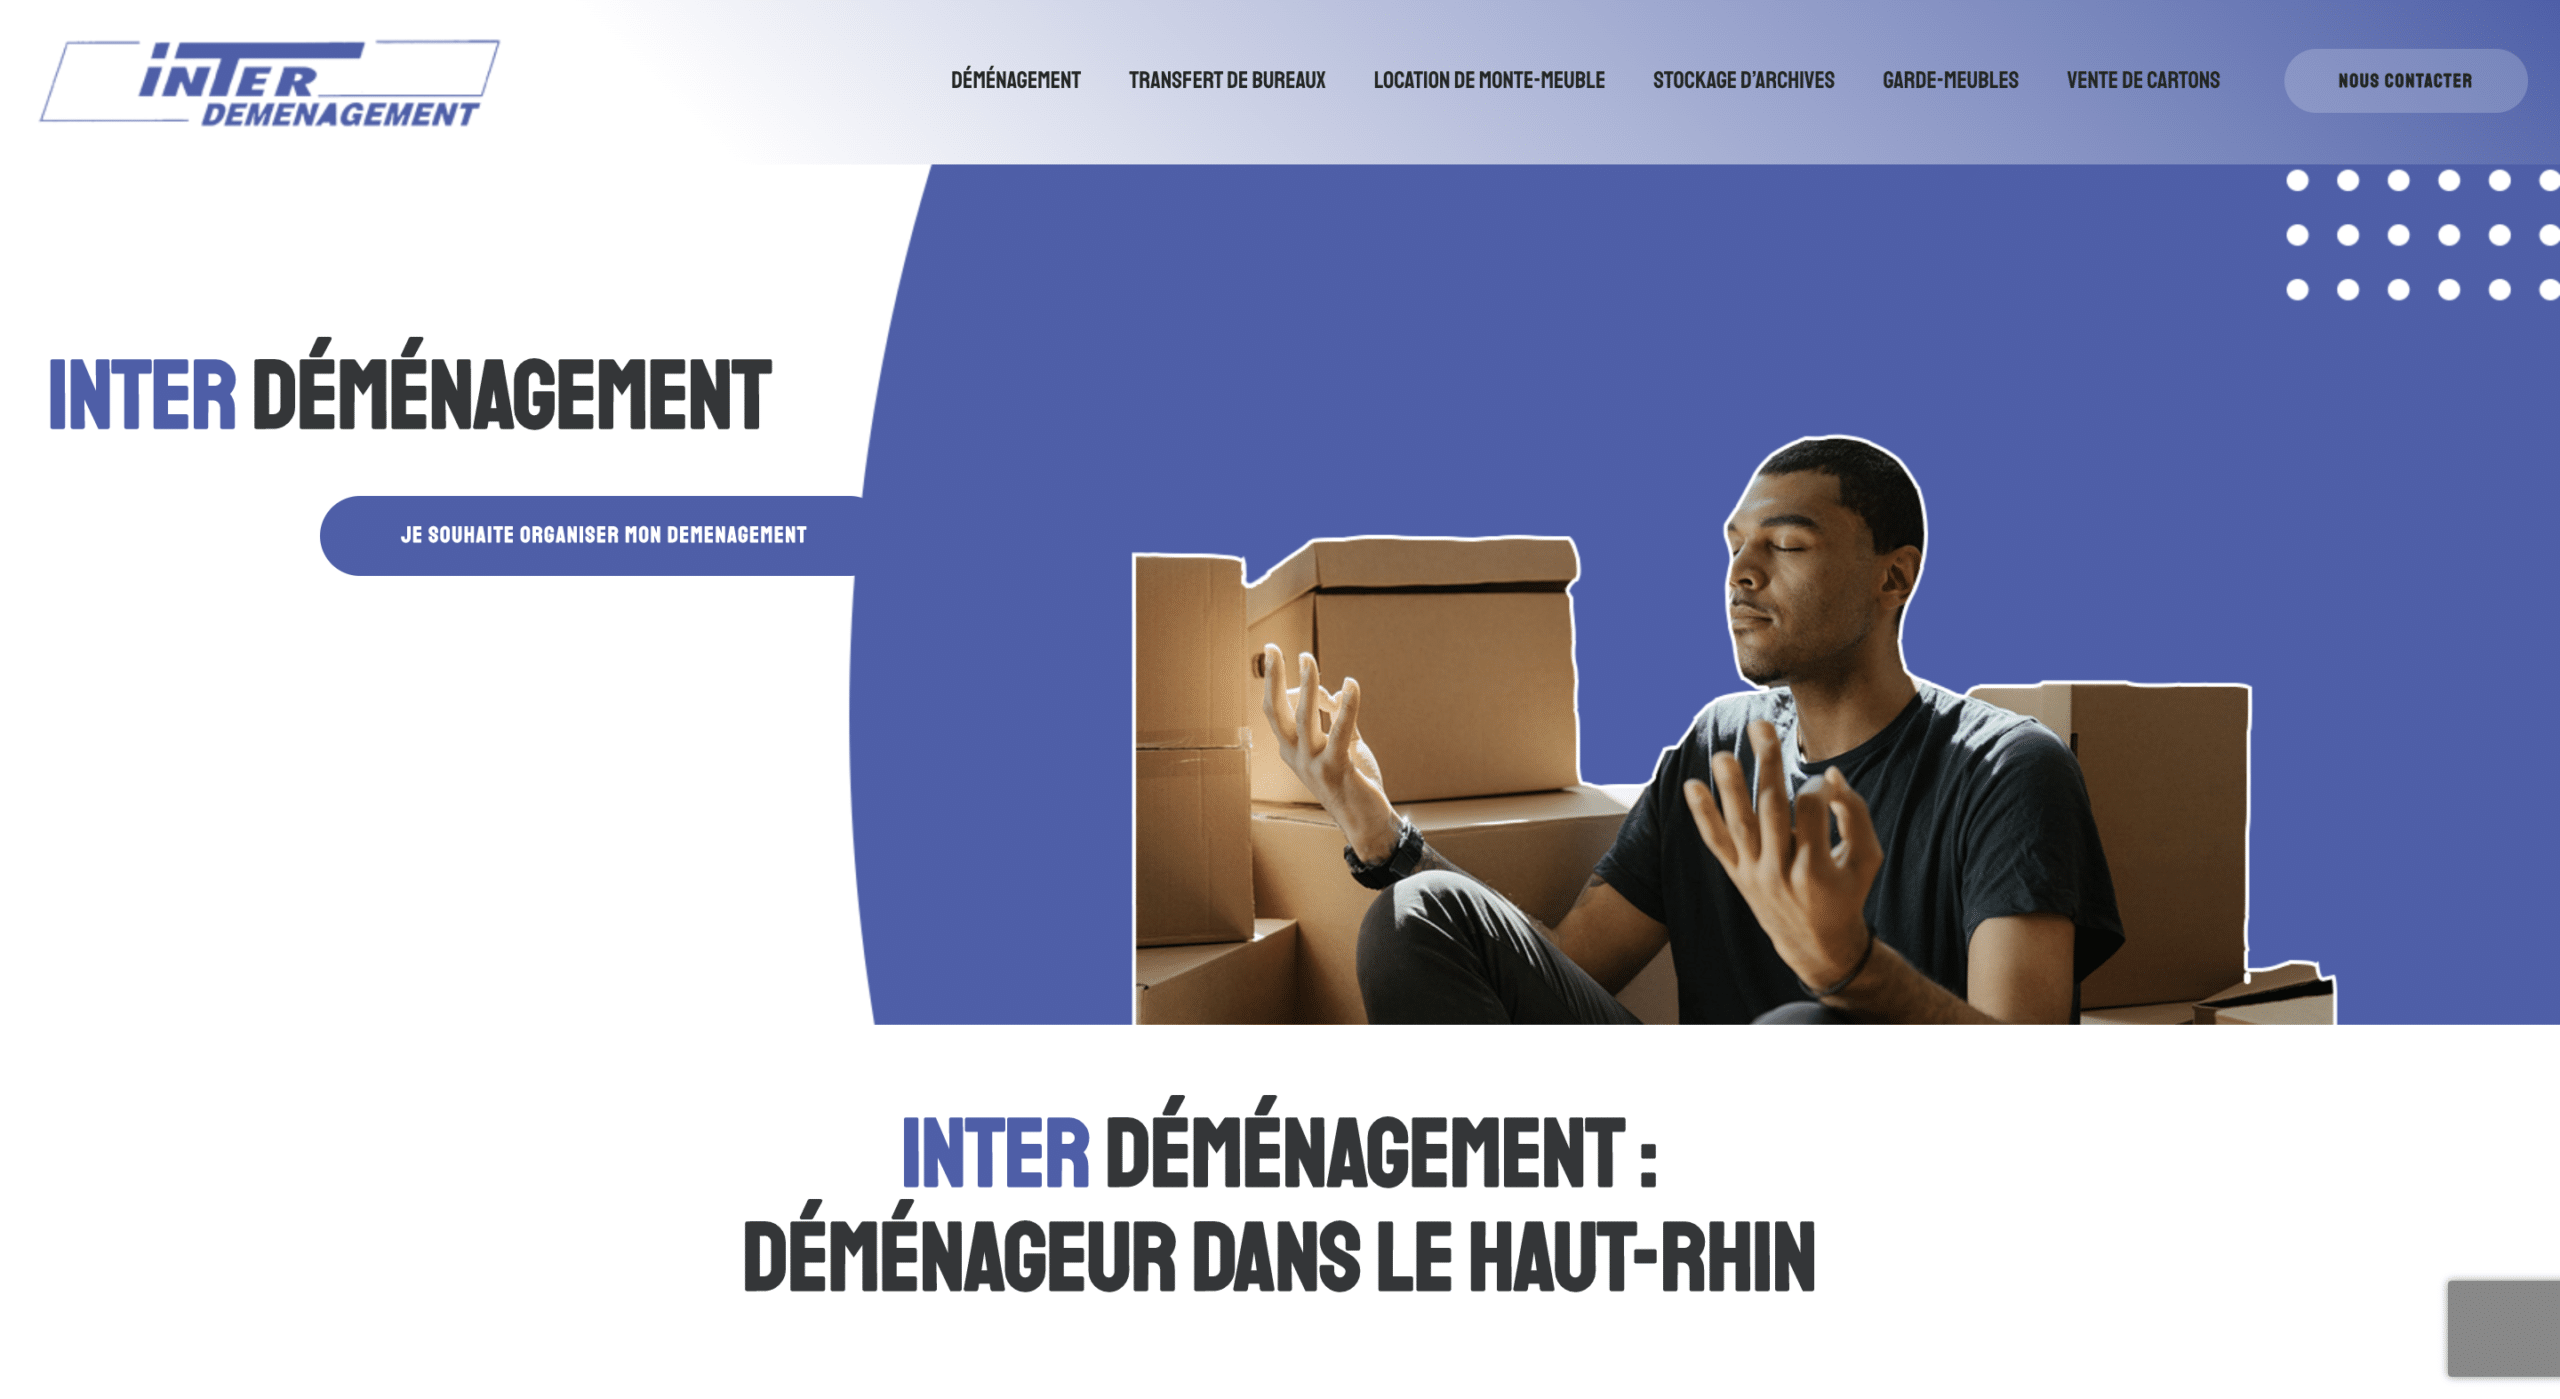 Page d'accueil du site Interdemenagement